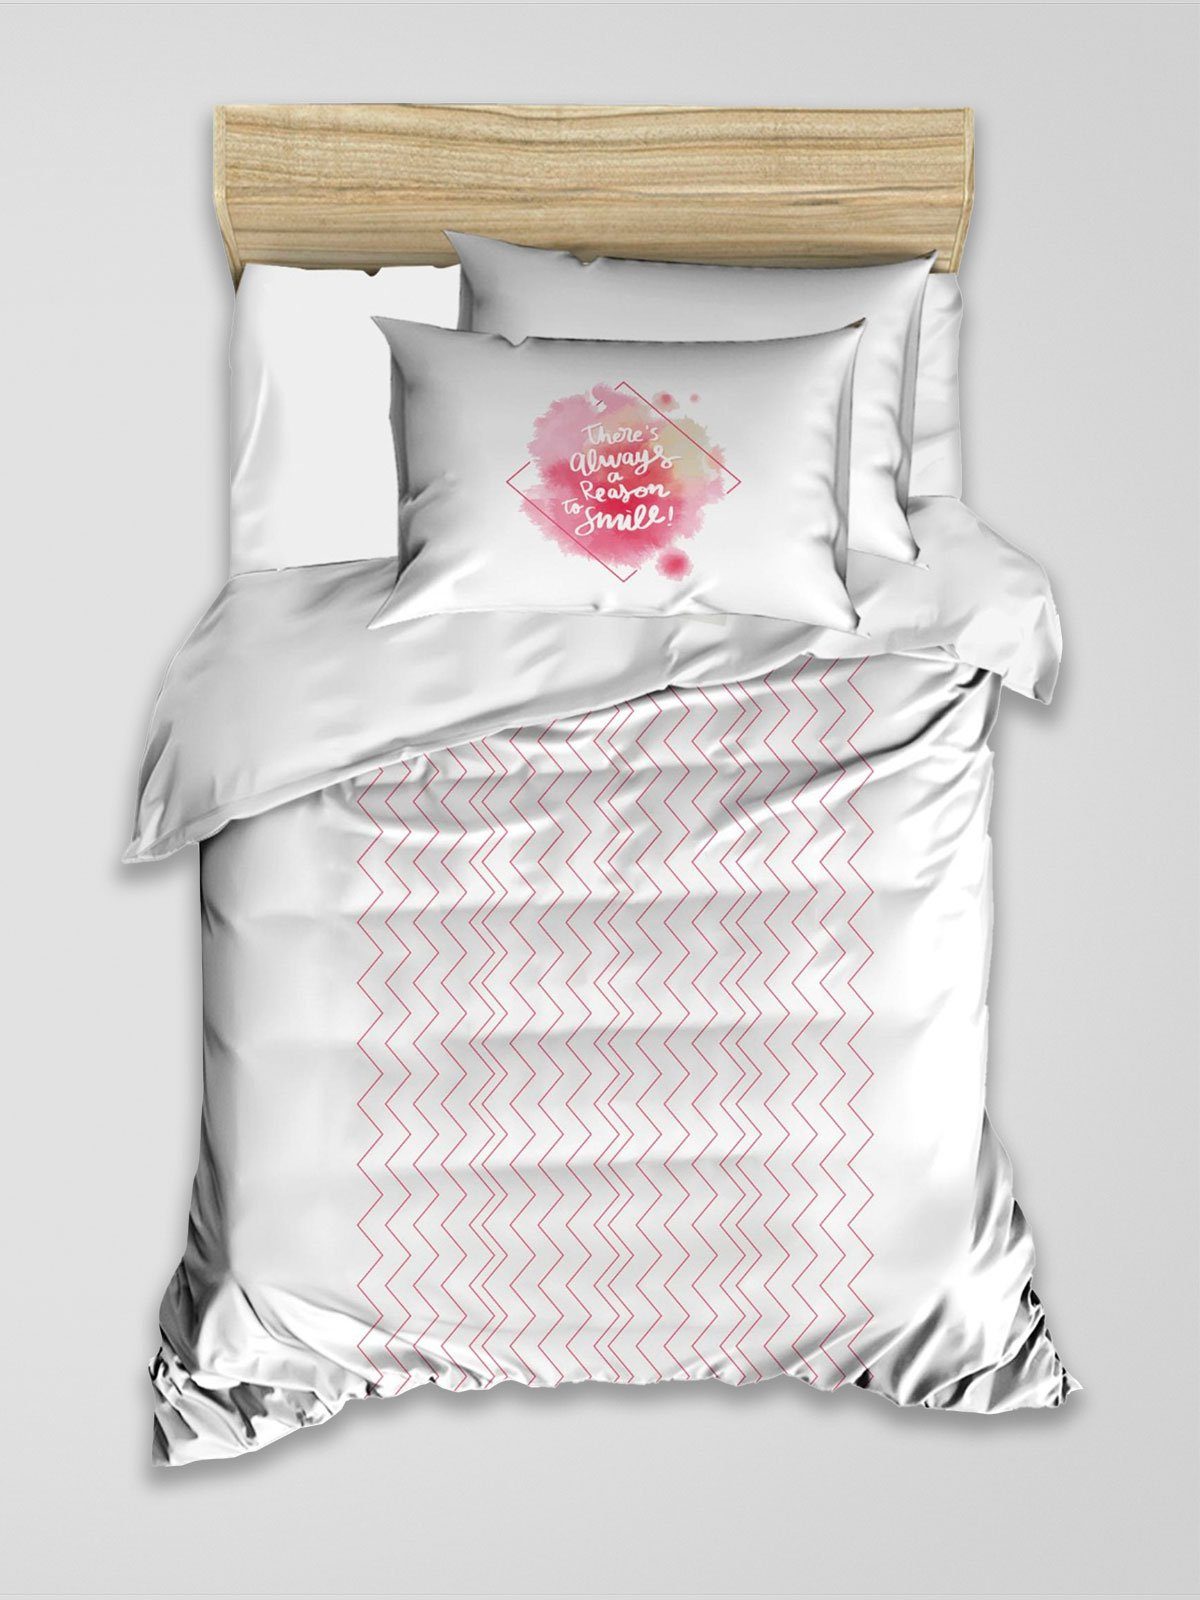 Bettwäsche Renforcé Bettbezug-Kopfkissenbezug-Set Streifen Design Weiß mit Rosa, Best Class, 100% Baumwolle, 2 teilig, Weich und atmungsaktiv Bettwäsche aus natürlicher Renforcé-Baumwolle